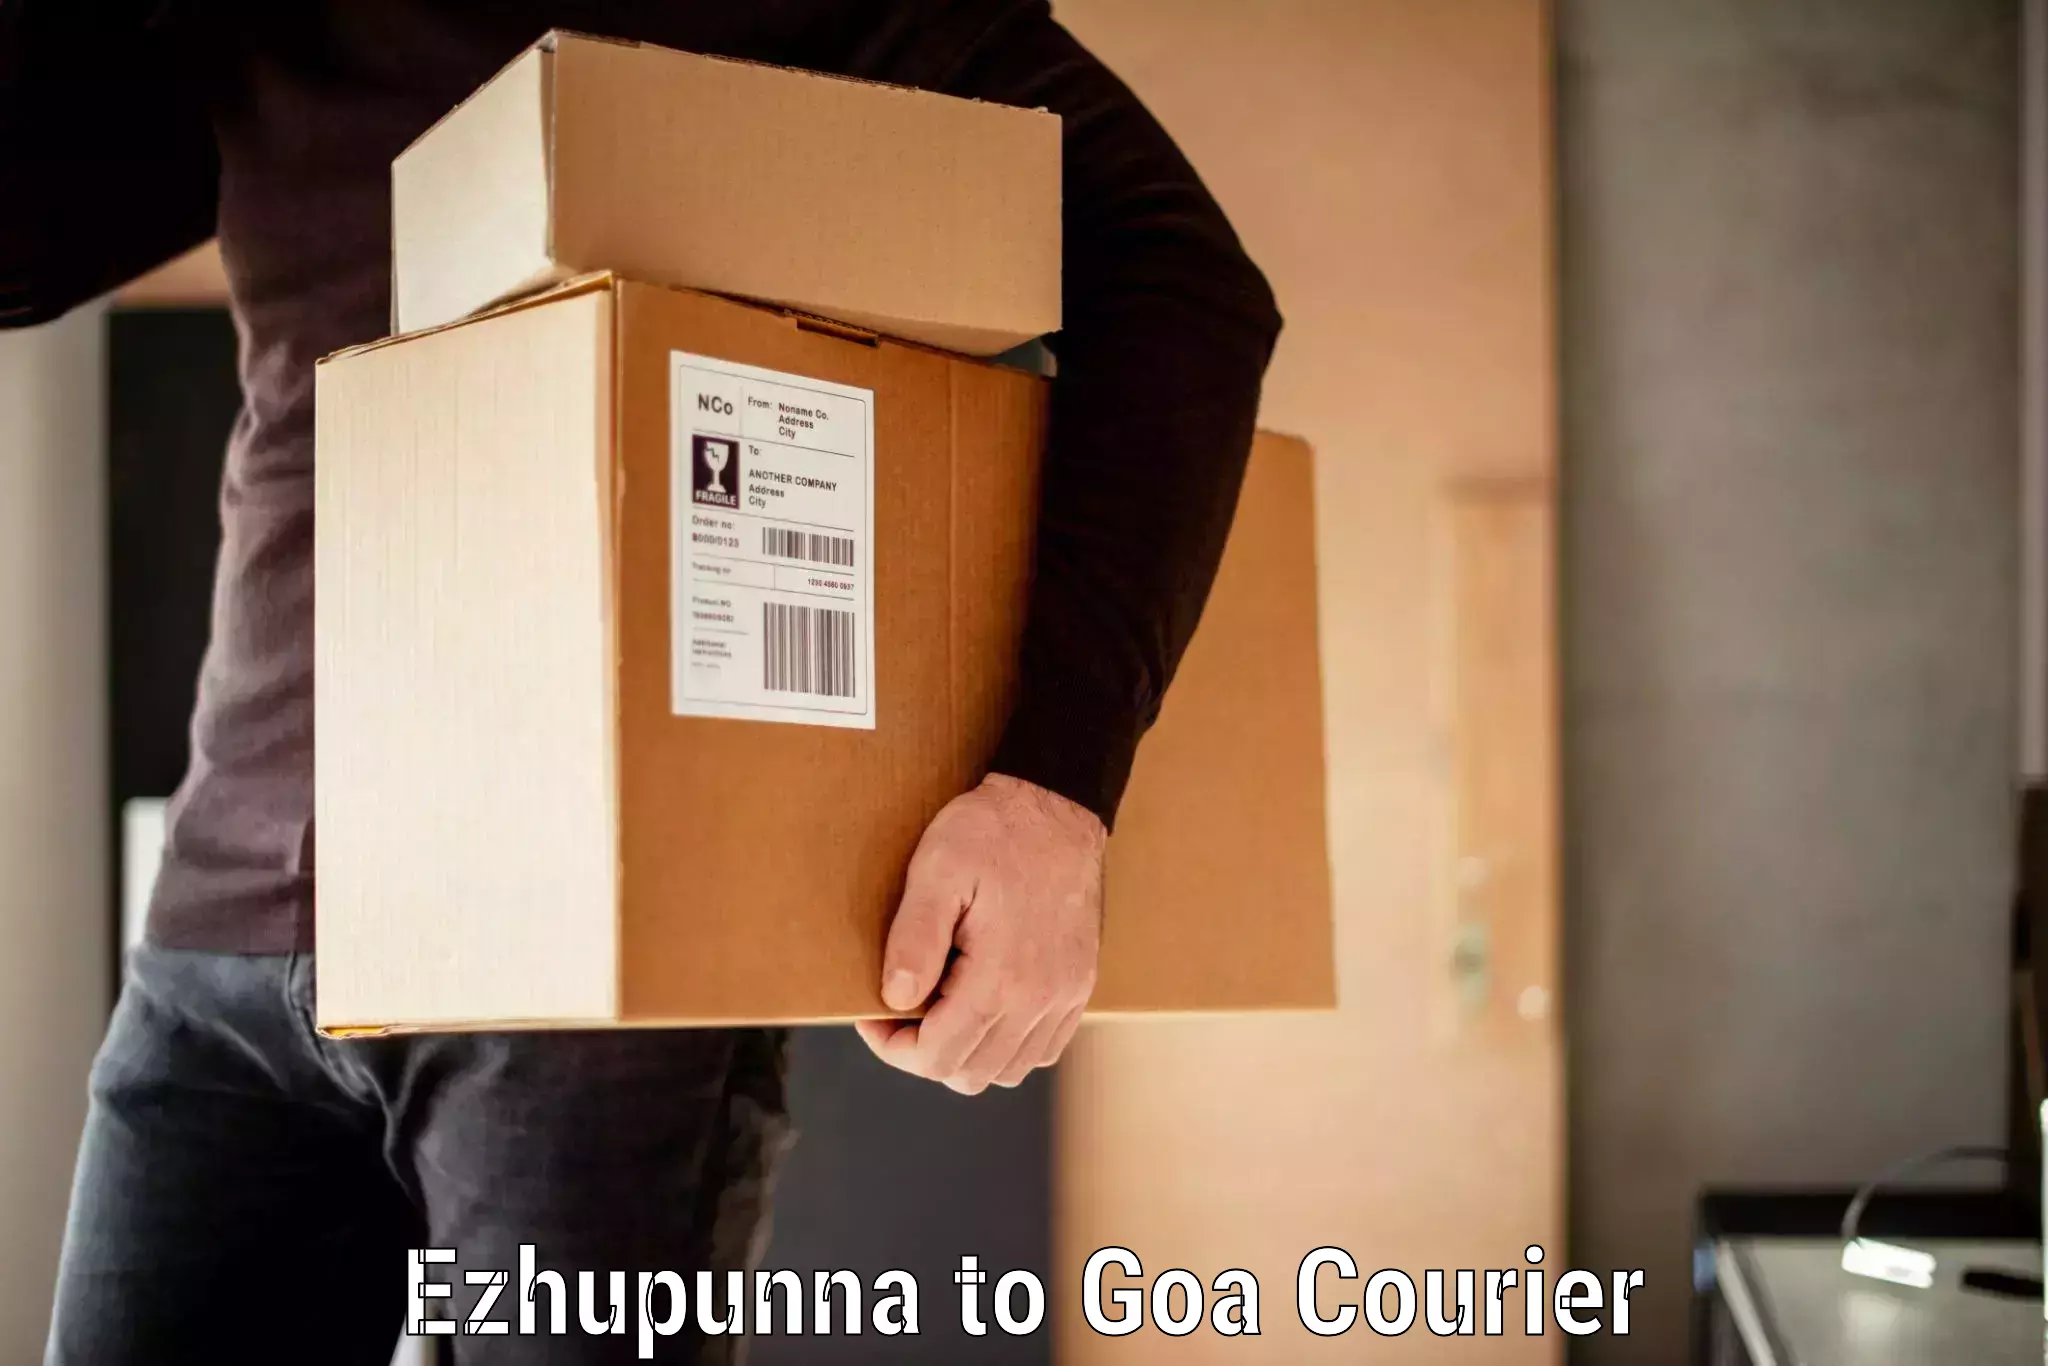 Luggage transport service Ezhupunna to NIT Goa